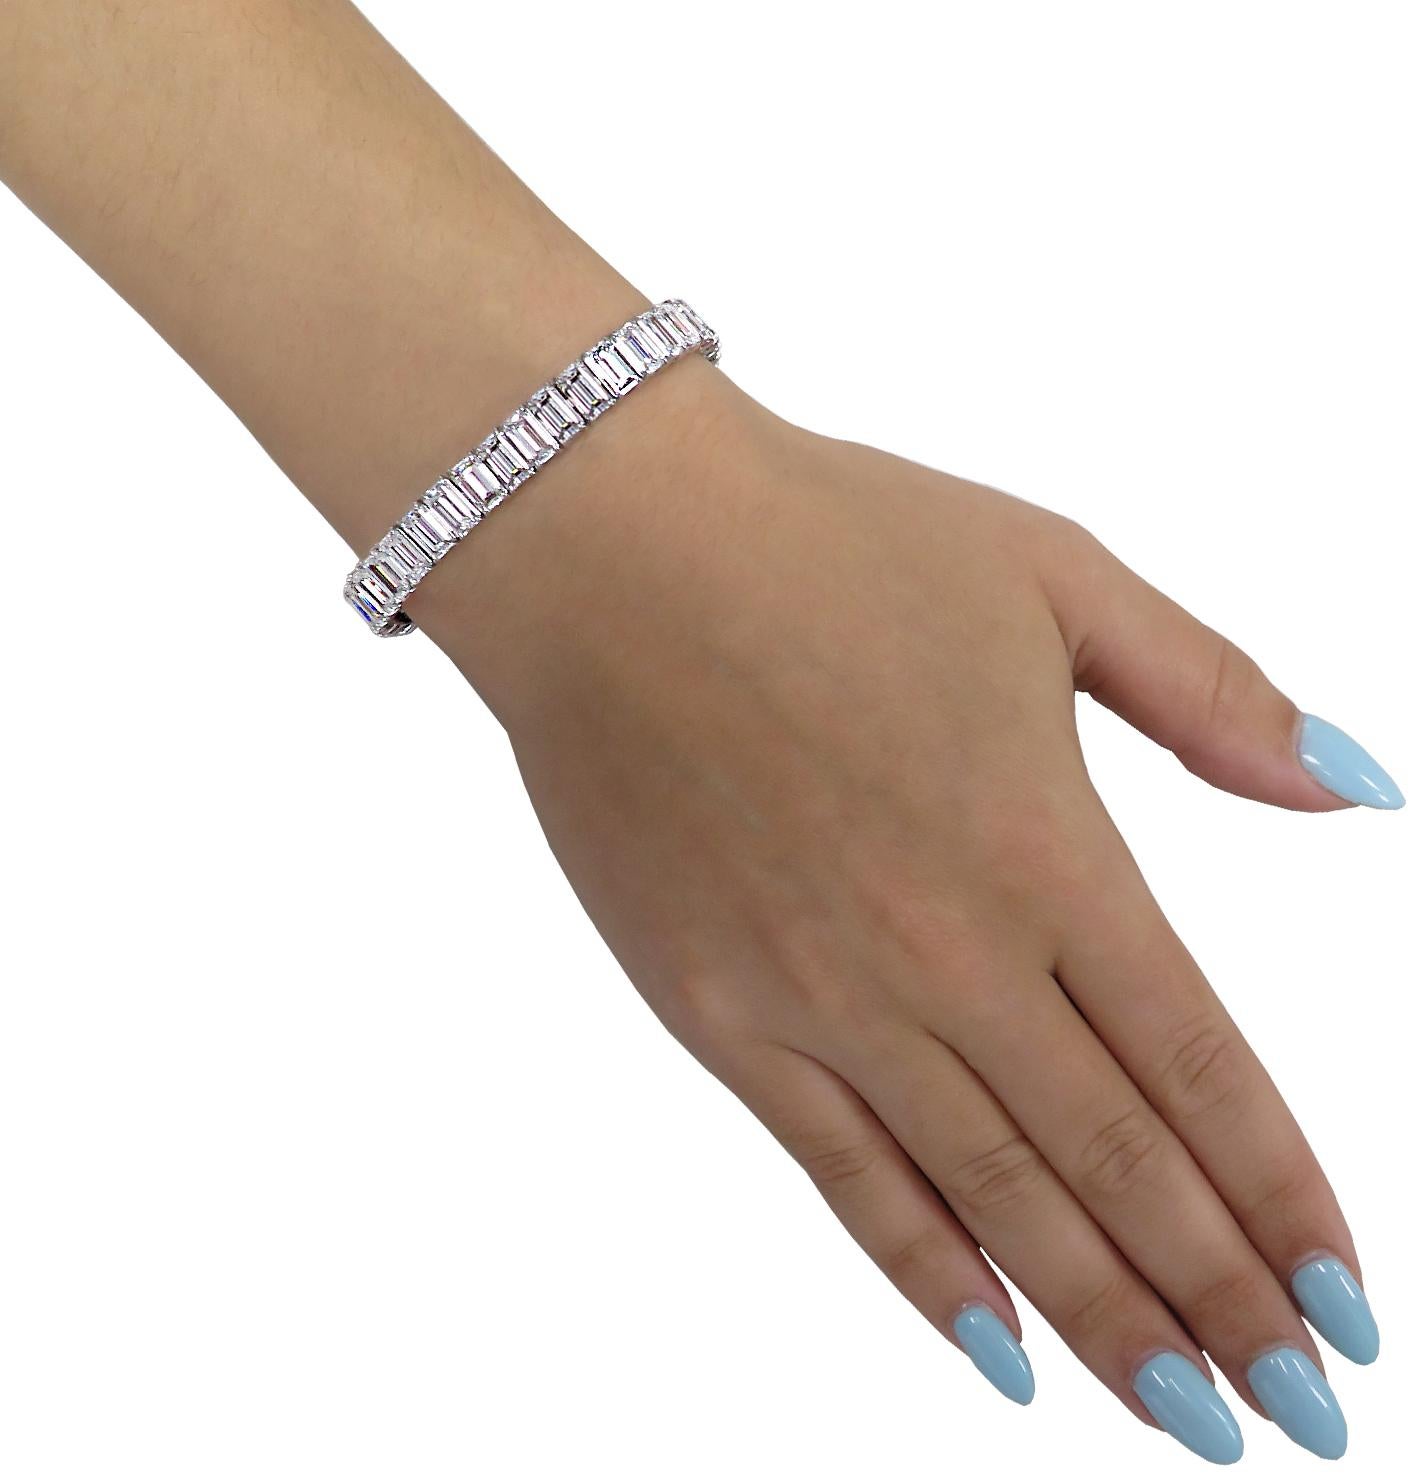 Bracelet en diamants scintillants Vivid Diamonds Emerald Cut, réalisé en platine, mettant en valeur 40 spectaculaires diamants de taille émeraude certifiés GIA pesant 31,9 carats au total, de couleur D&H et de pureté IF-VS2. Chaque diamant a été